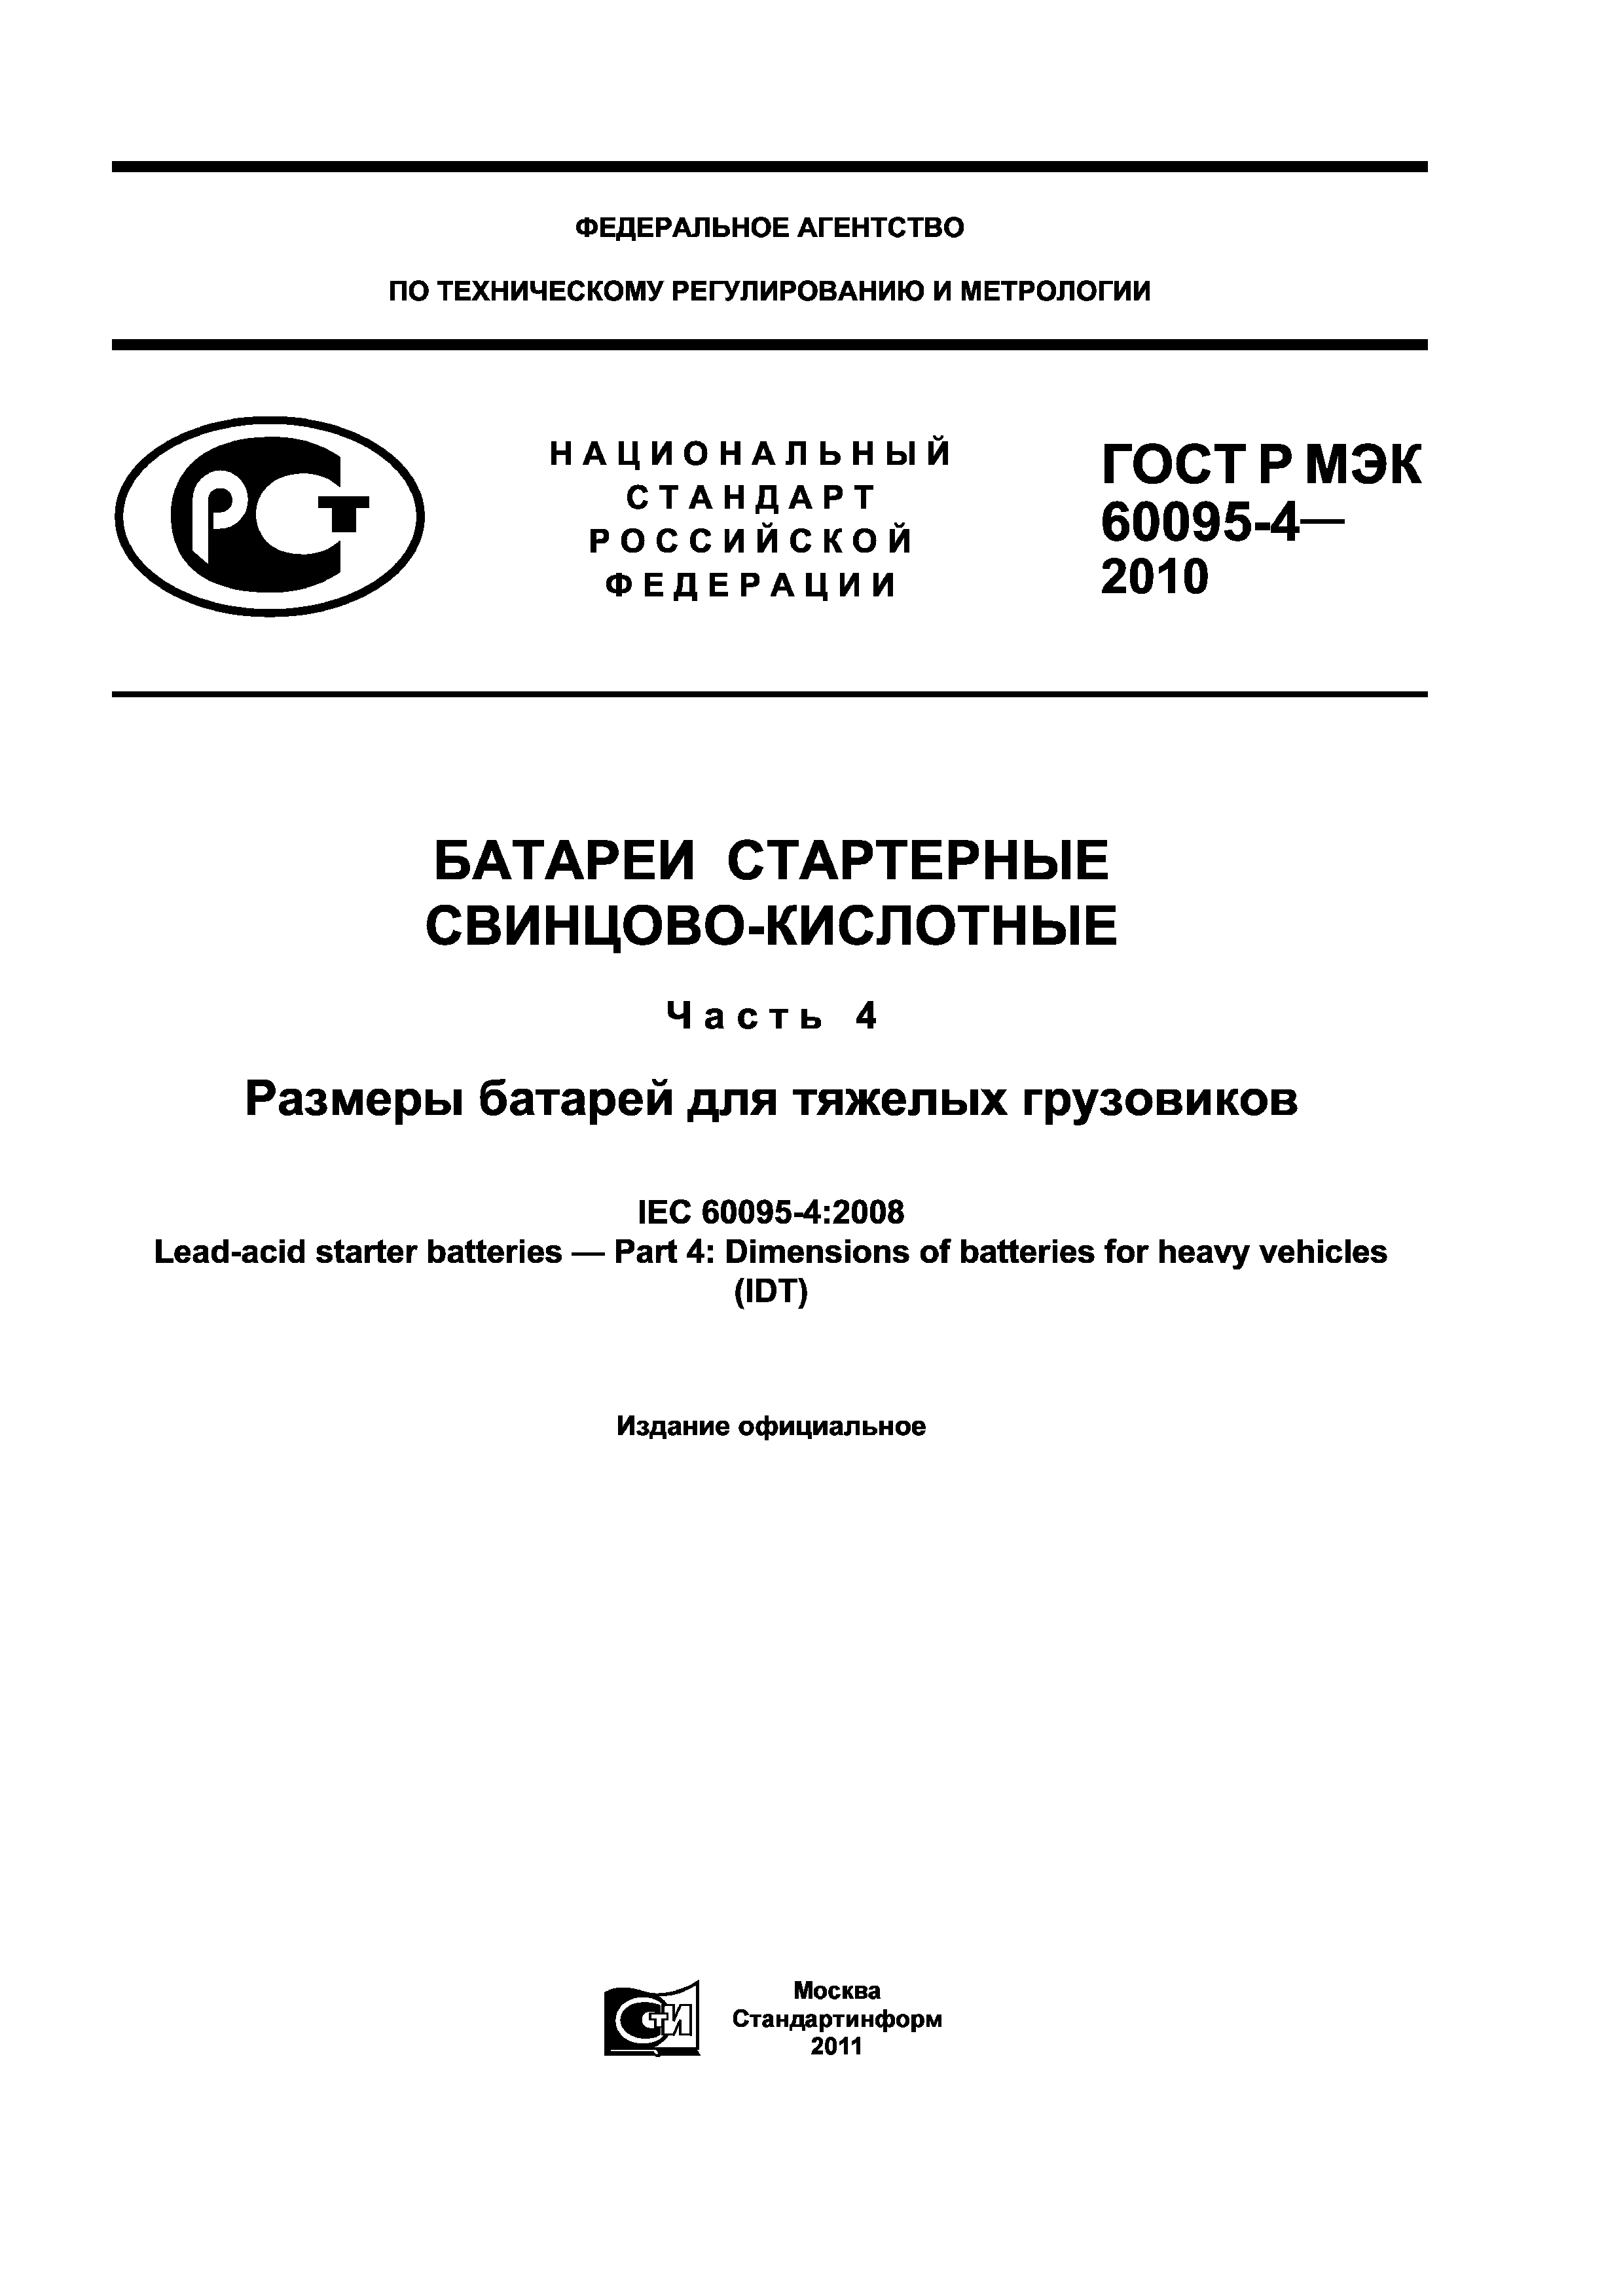 ГОСТ Р МЭК 60095-4-2010